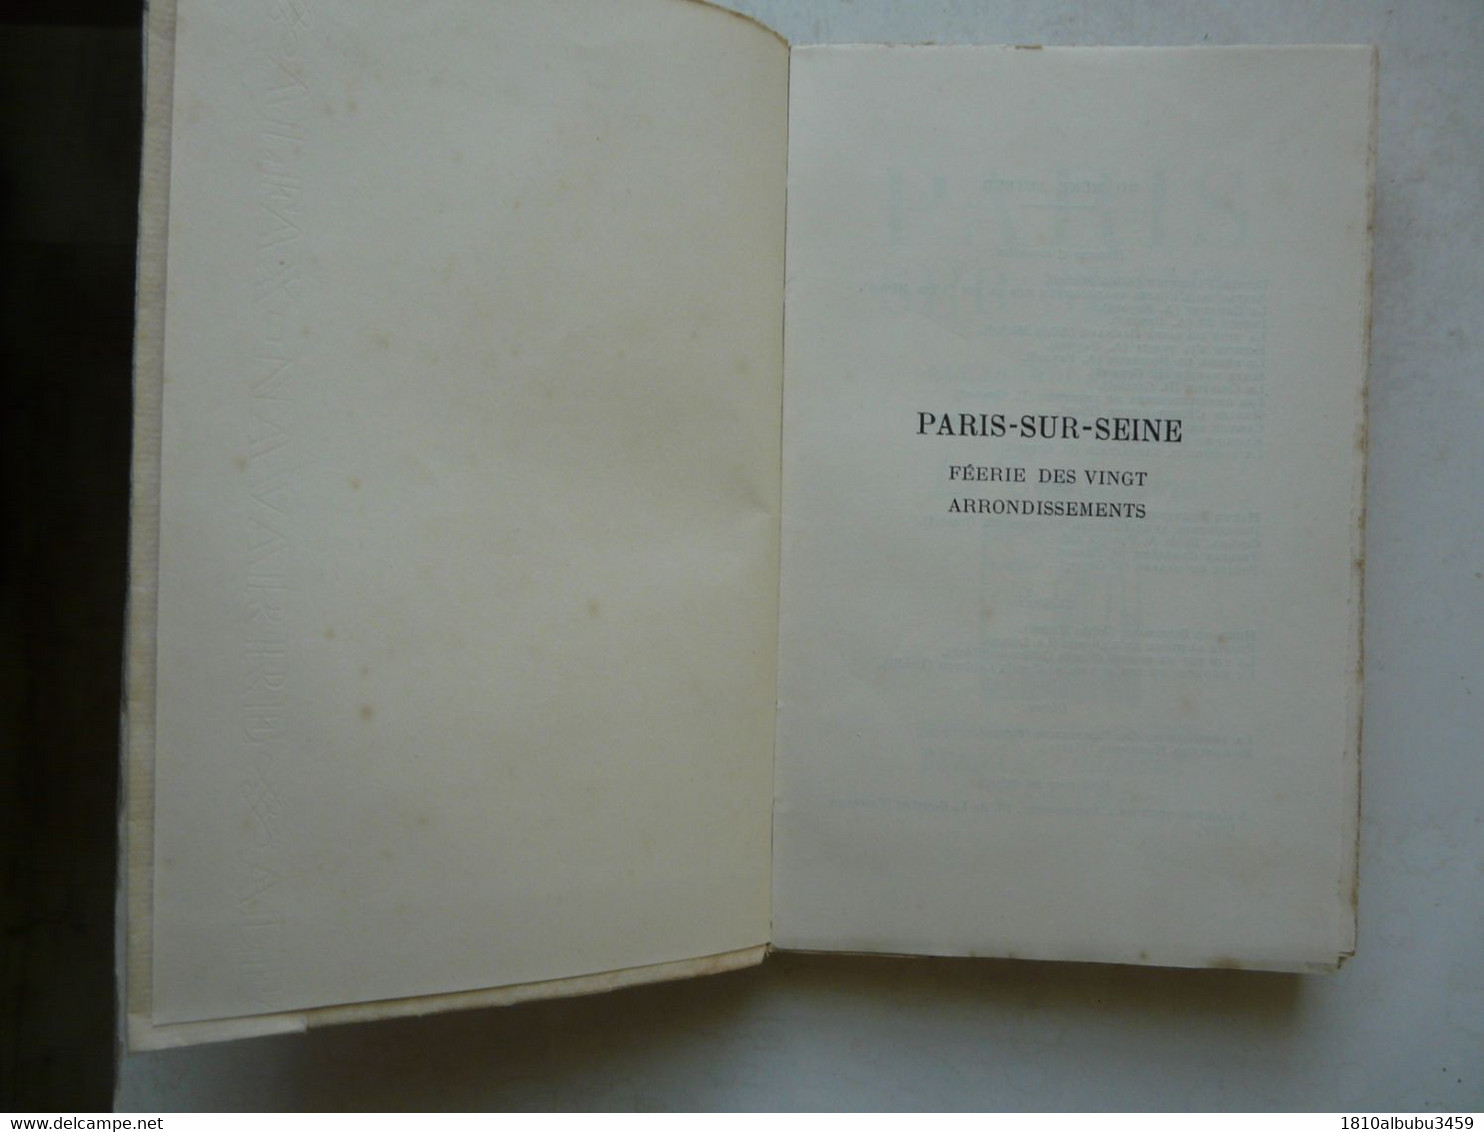 EXEMPLAIRE DE PRESSE XCII - PARIS SUR SEINE Par Alexandre ARNOUX : Le Trentenaire 1939 - Soziologie